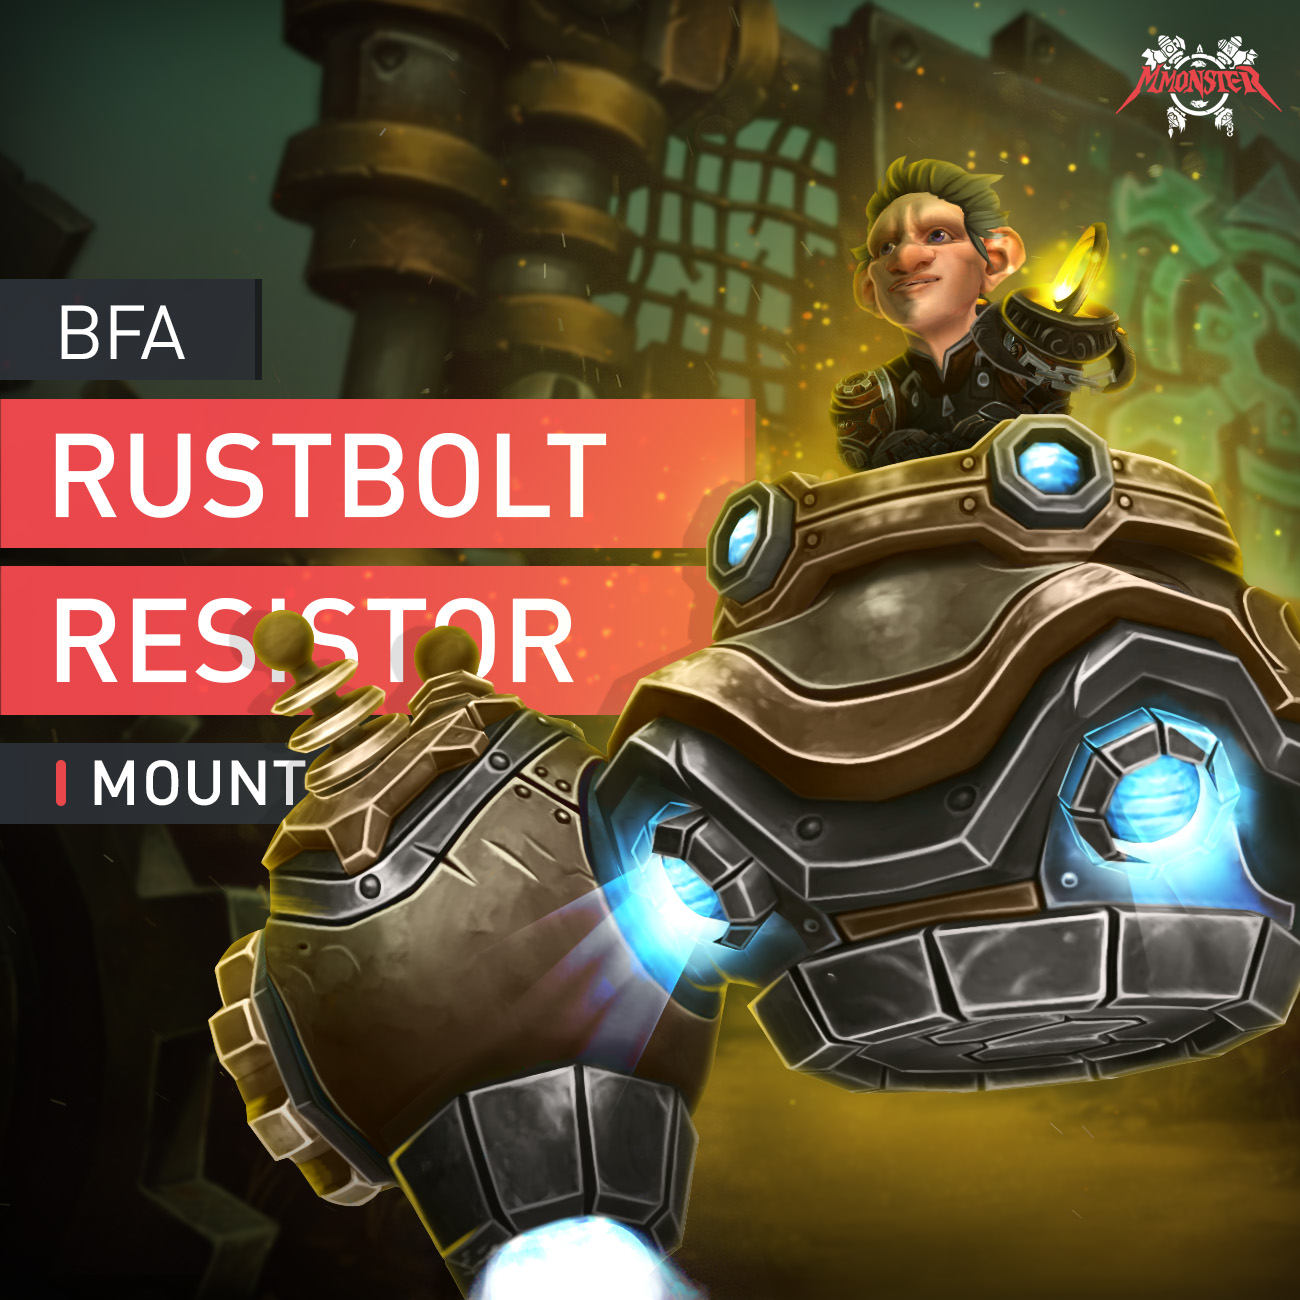 Rustbolt Resistor Mount